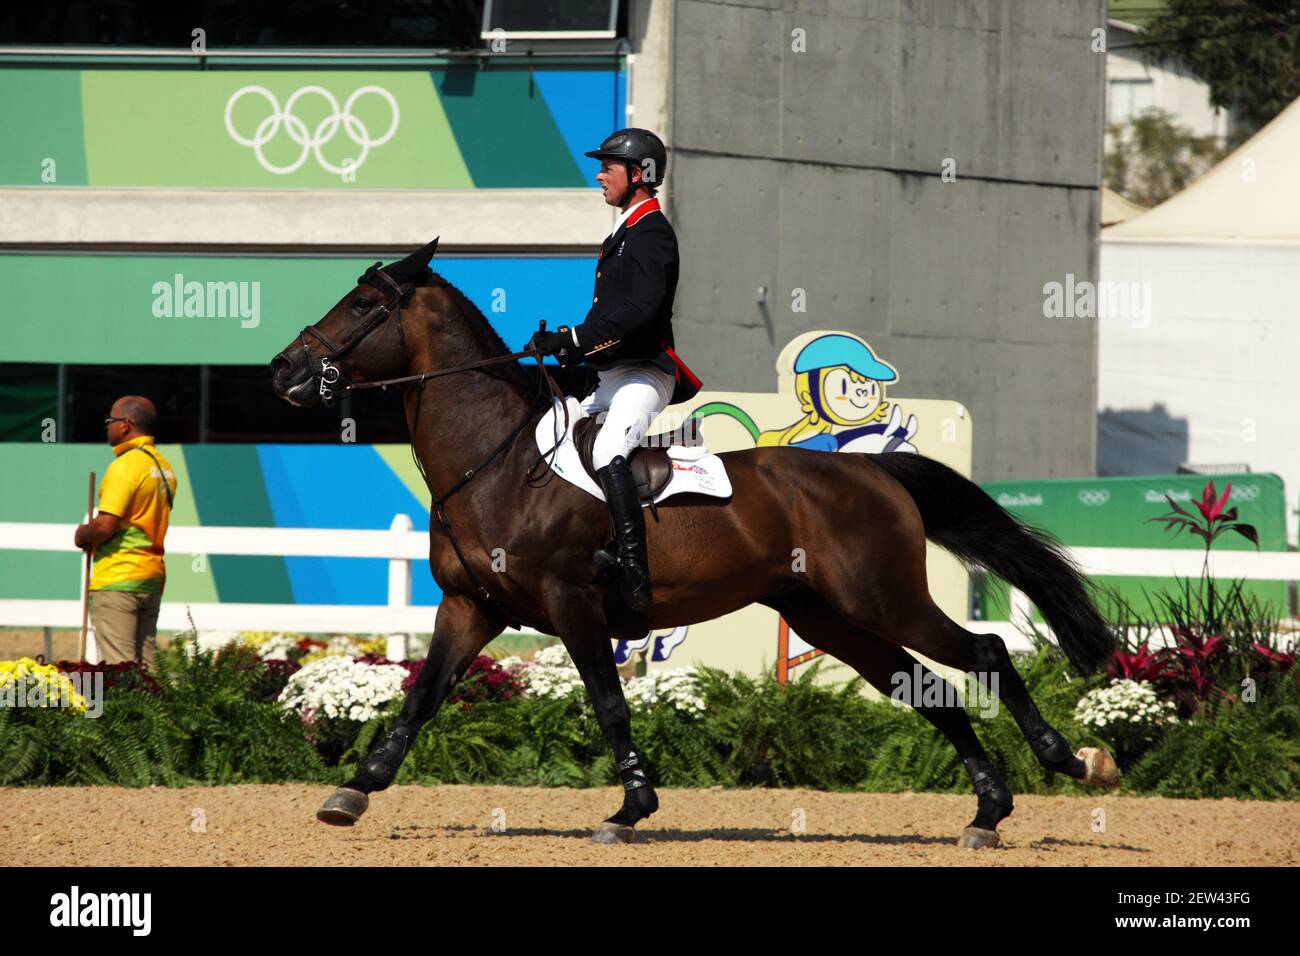 Ben Maher dalla Gran Bretagna cavalcando Tic TAC nei Giochi Olimpici del 2016 a Rio de Janeiro, Brasile Foto Stock